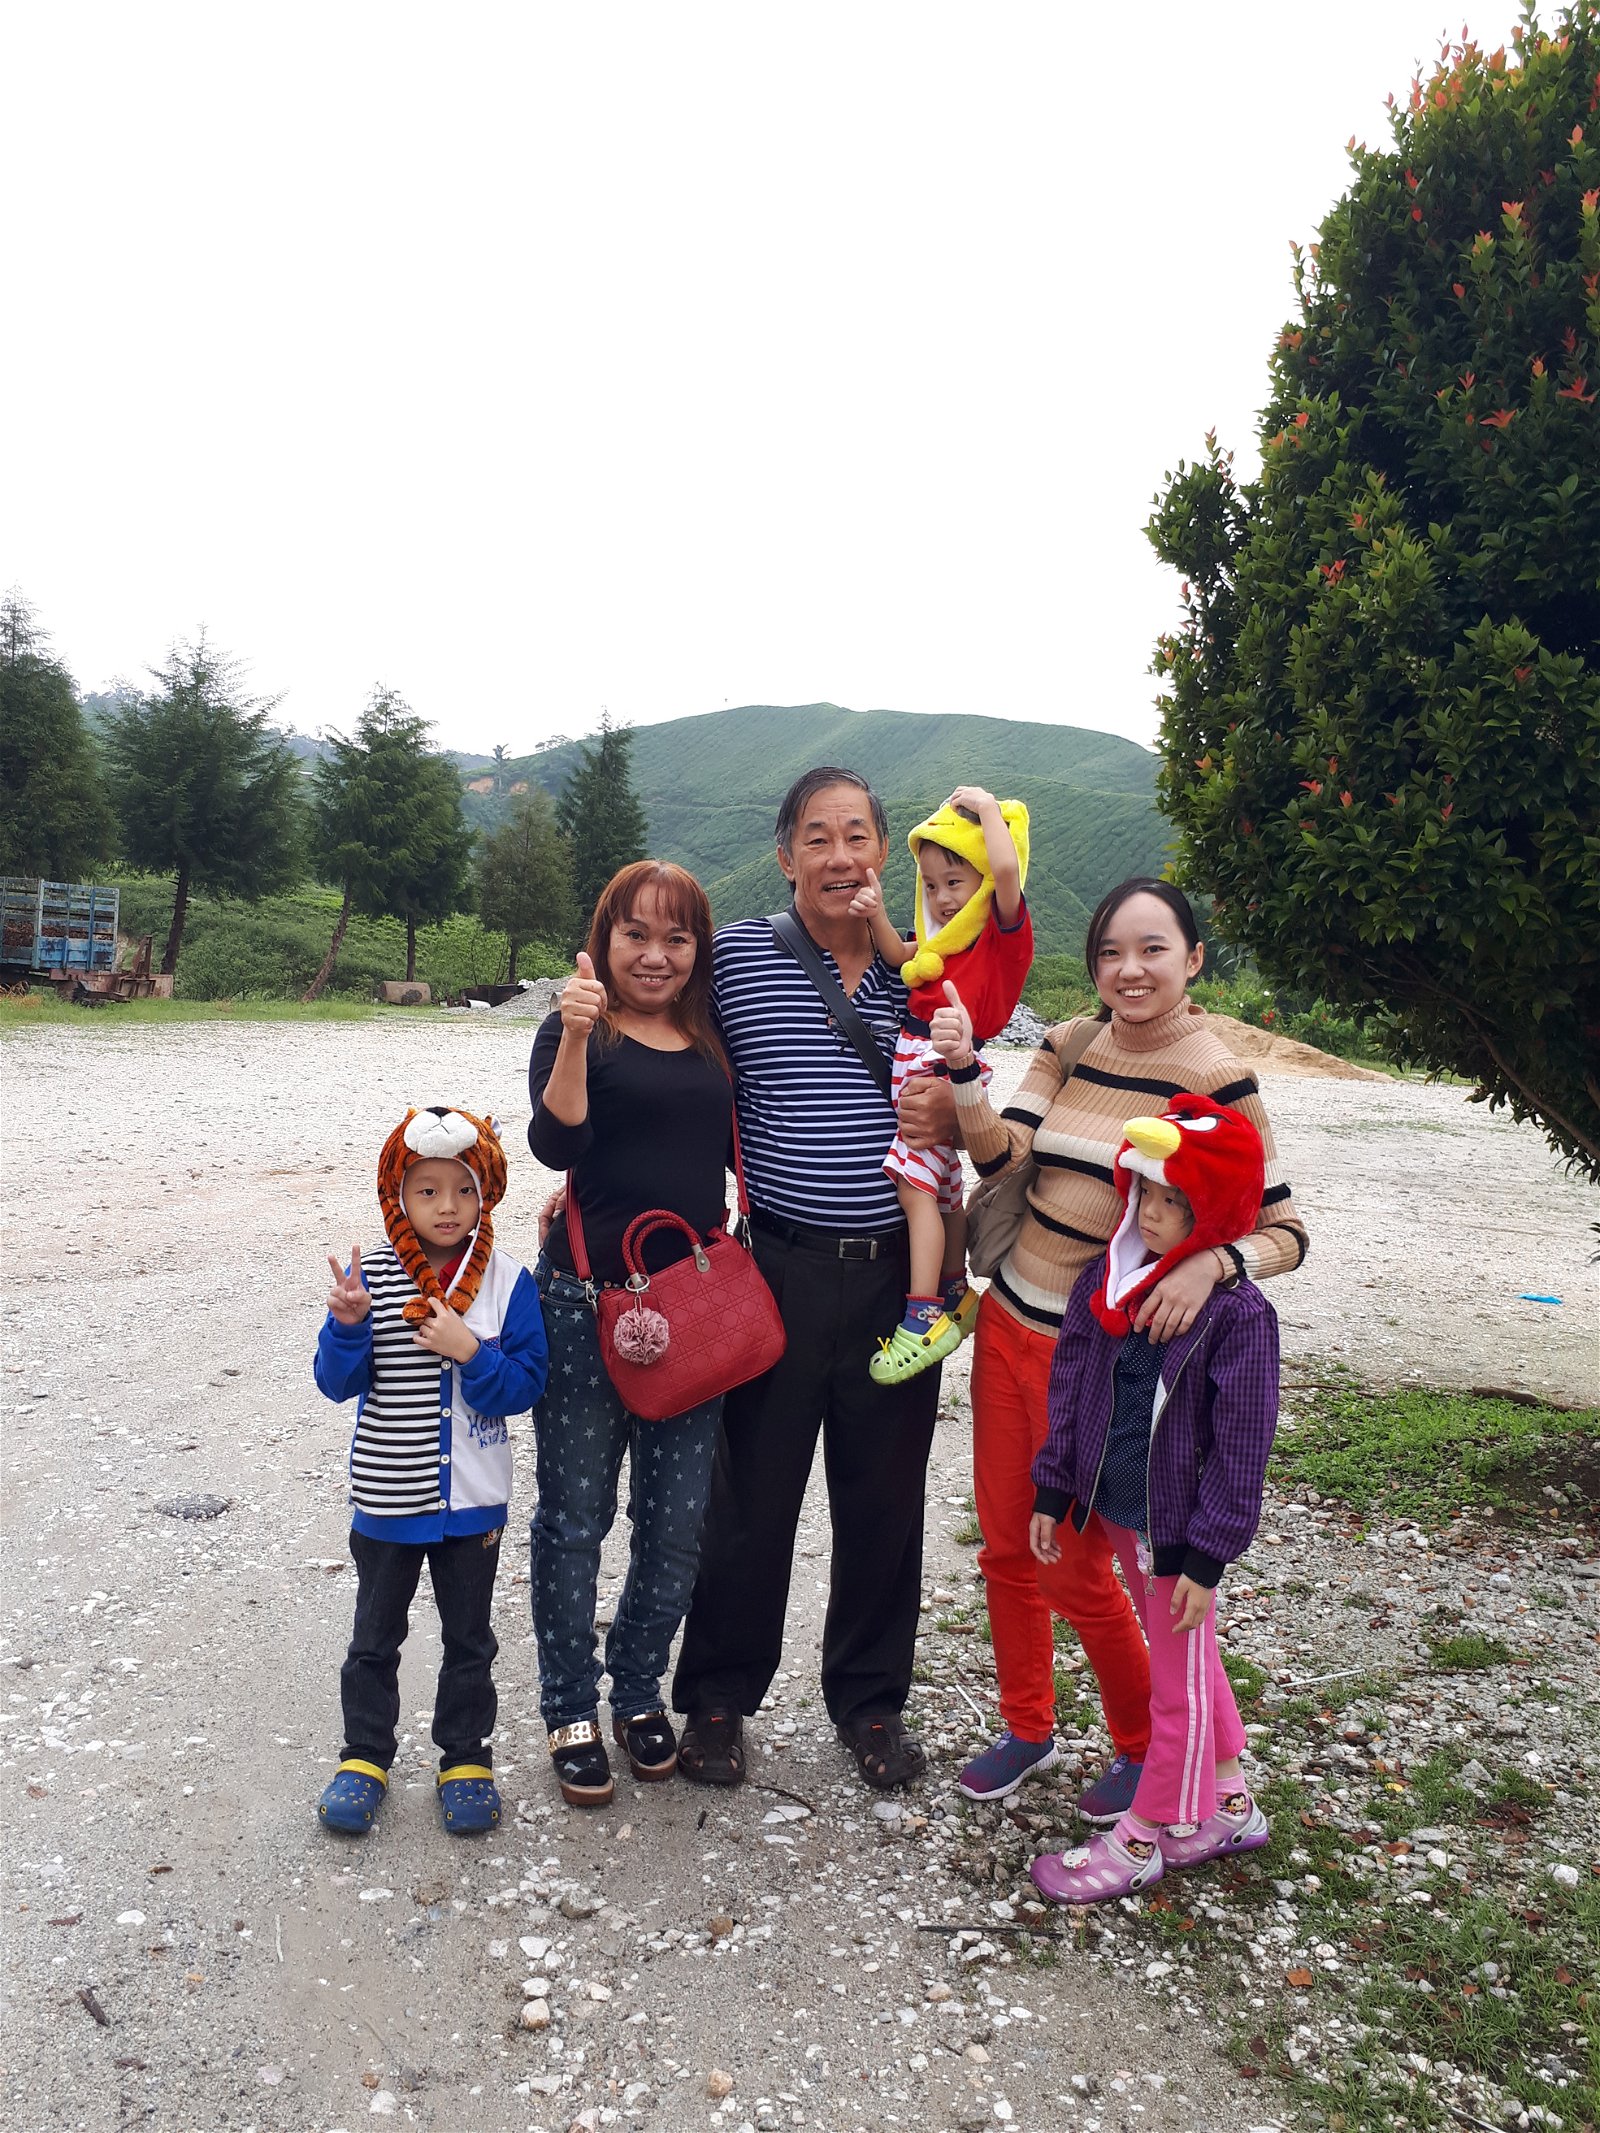 黄莹娟（右2）因为必须与孩子保持距离而感到失落，她希望在疫情结束后能抱抱大女儿和二儿子。图为黄莹娟与爸妈及孩子的合照。